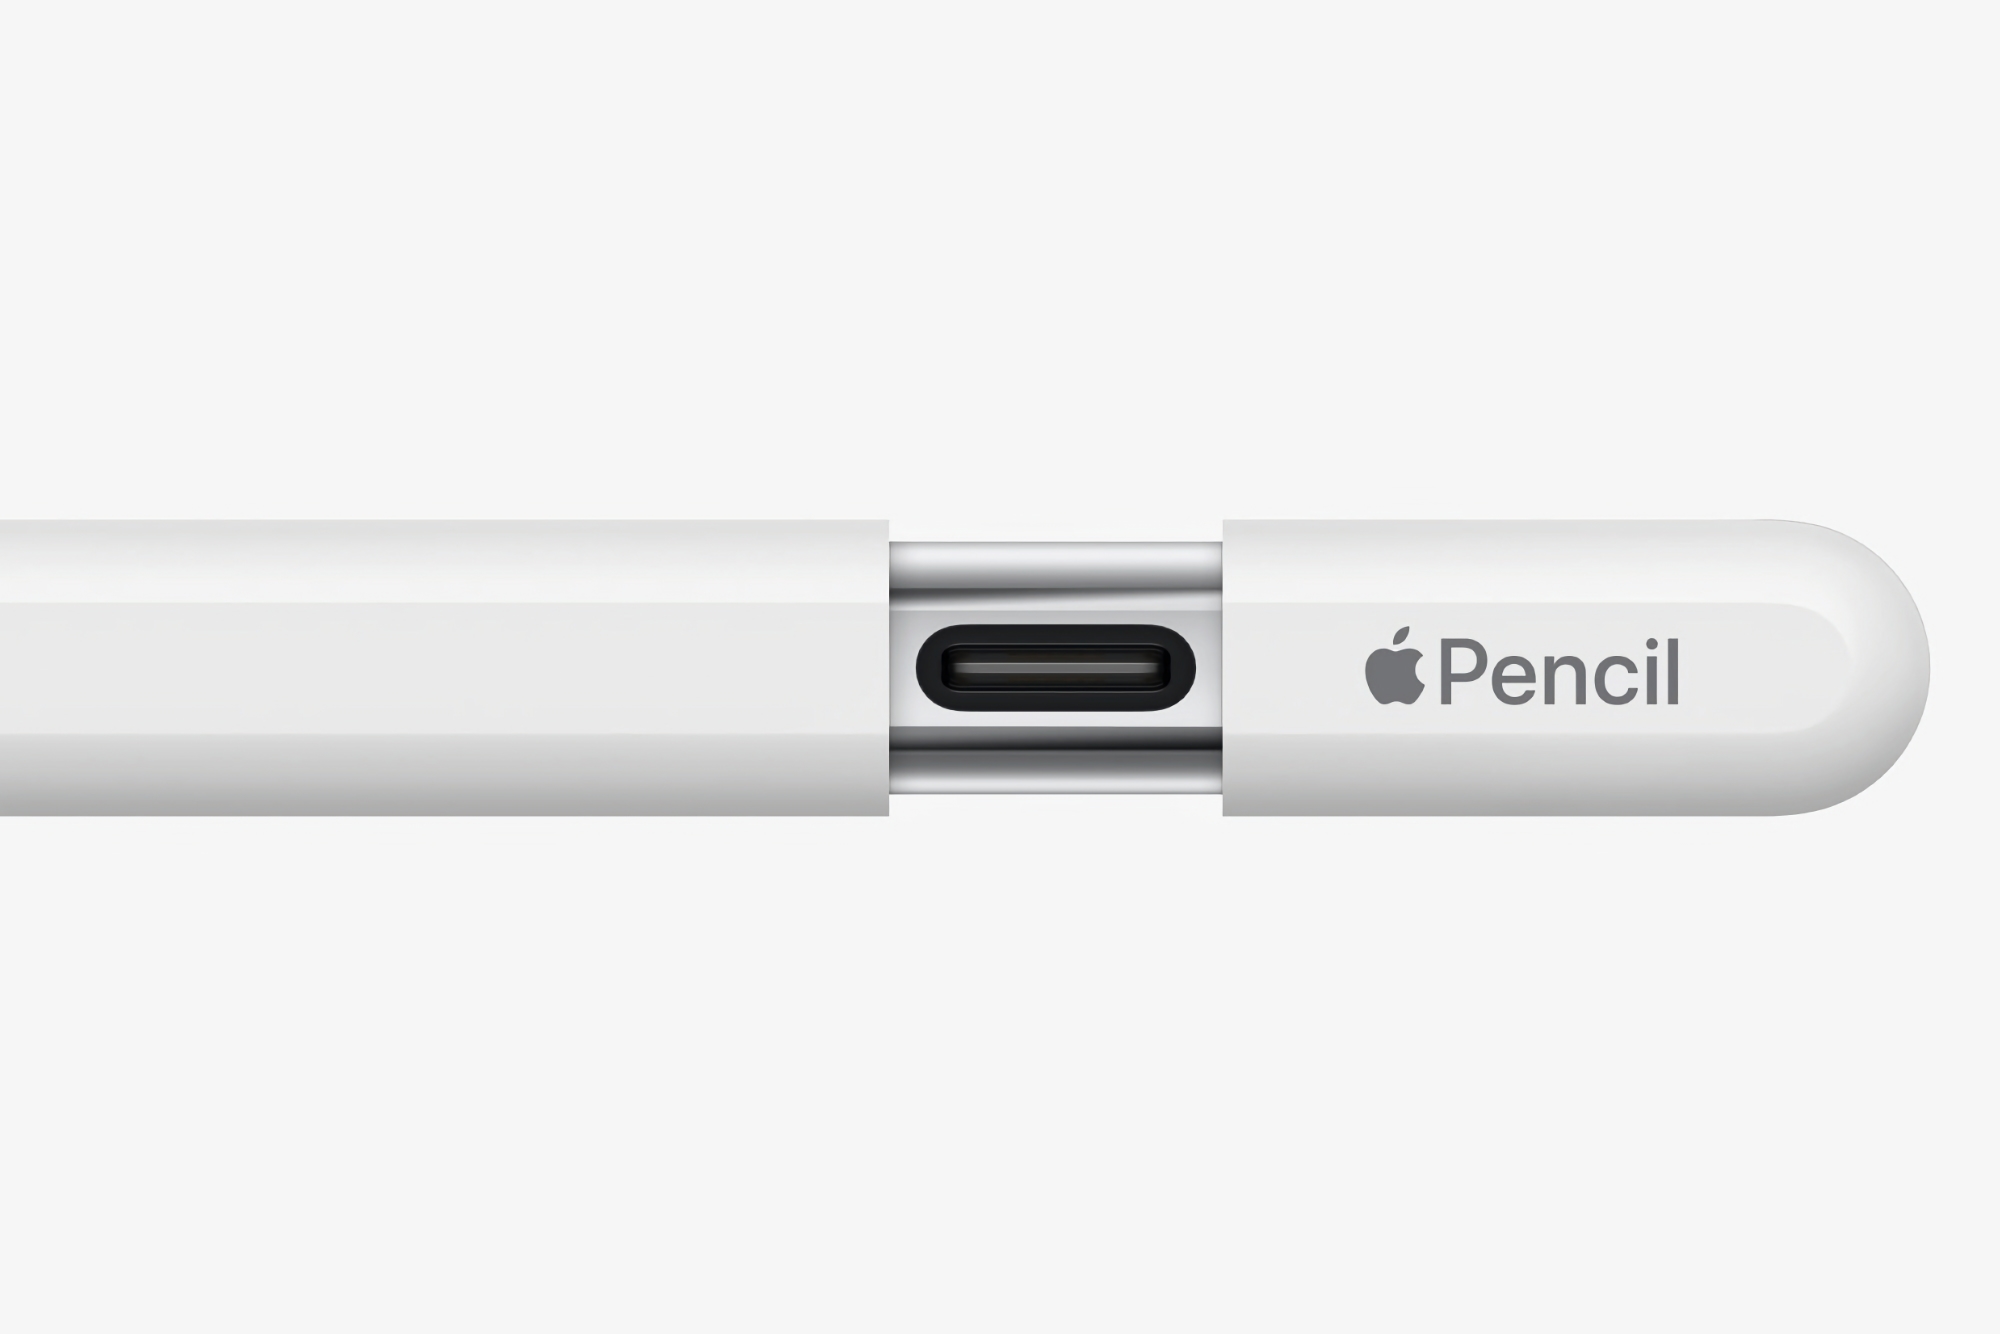 Apple udostępniło nowe oprogramowanie układowe dla Apple Pencil z USB-C